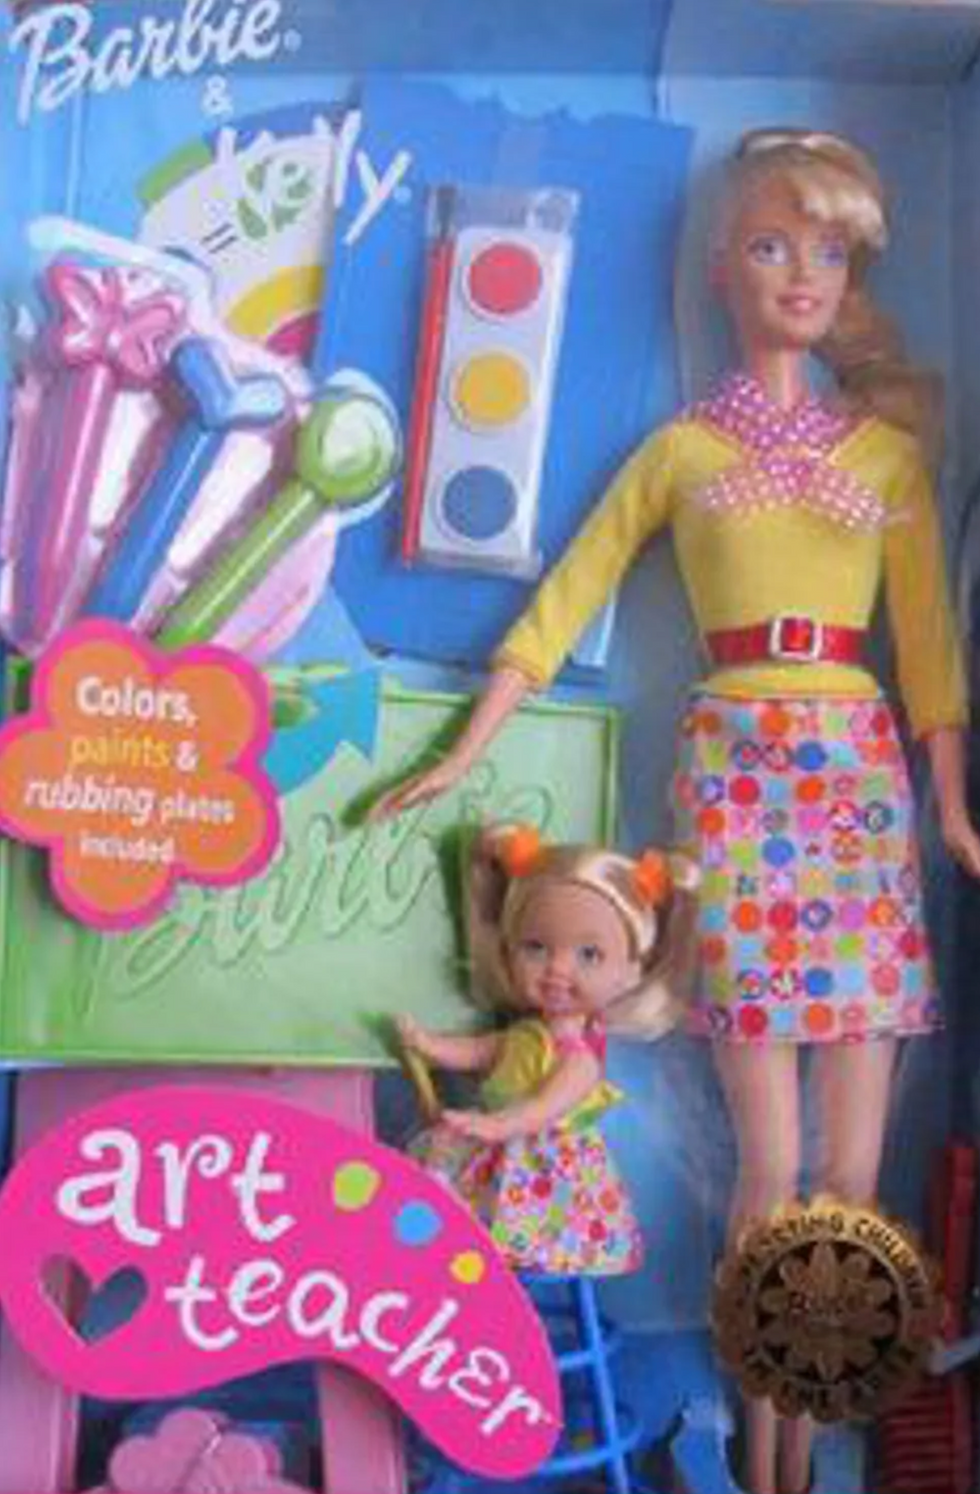 An art teacher Barbie